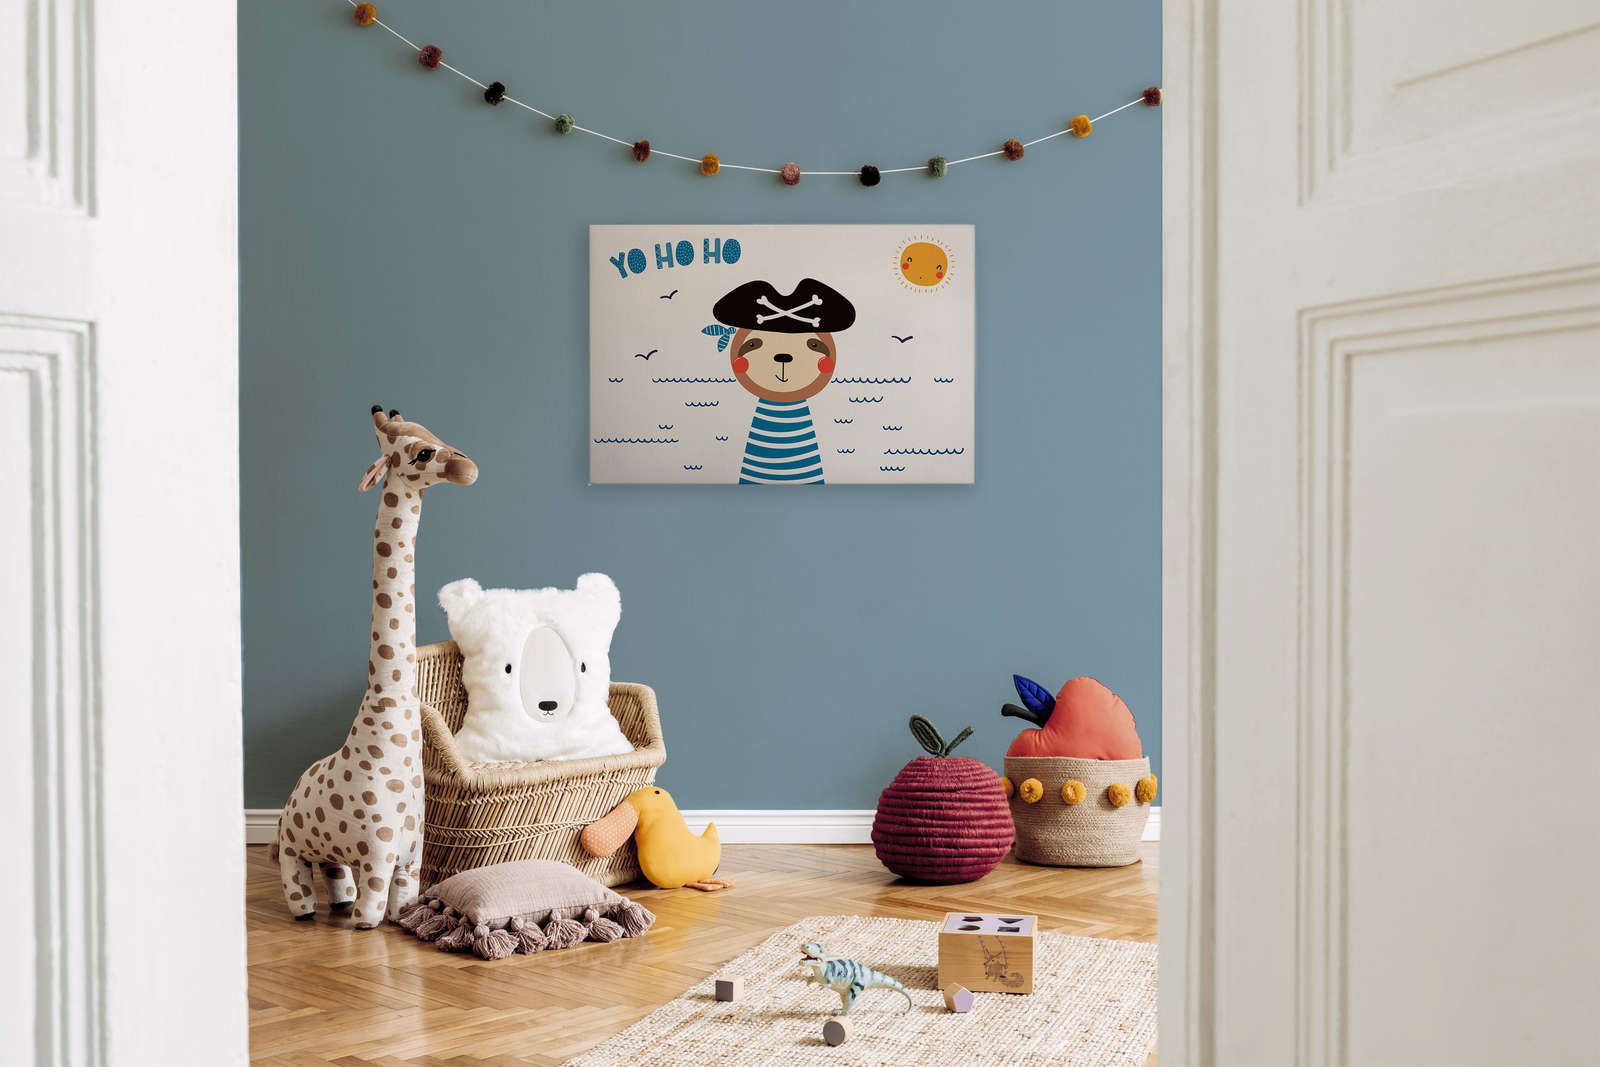             Canvas voor kinderkamer met beer piraat - 90 cm x 60 cm
        